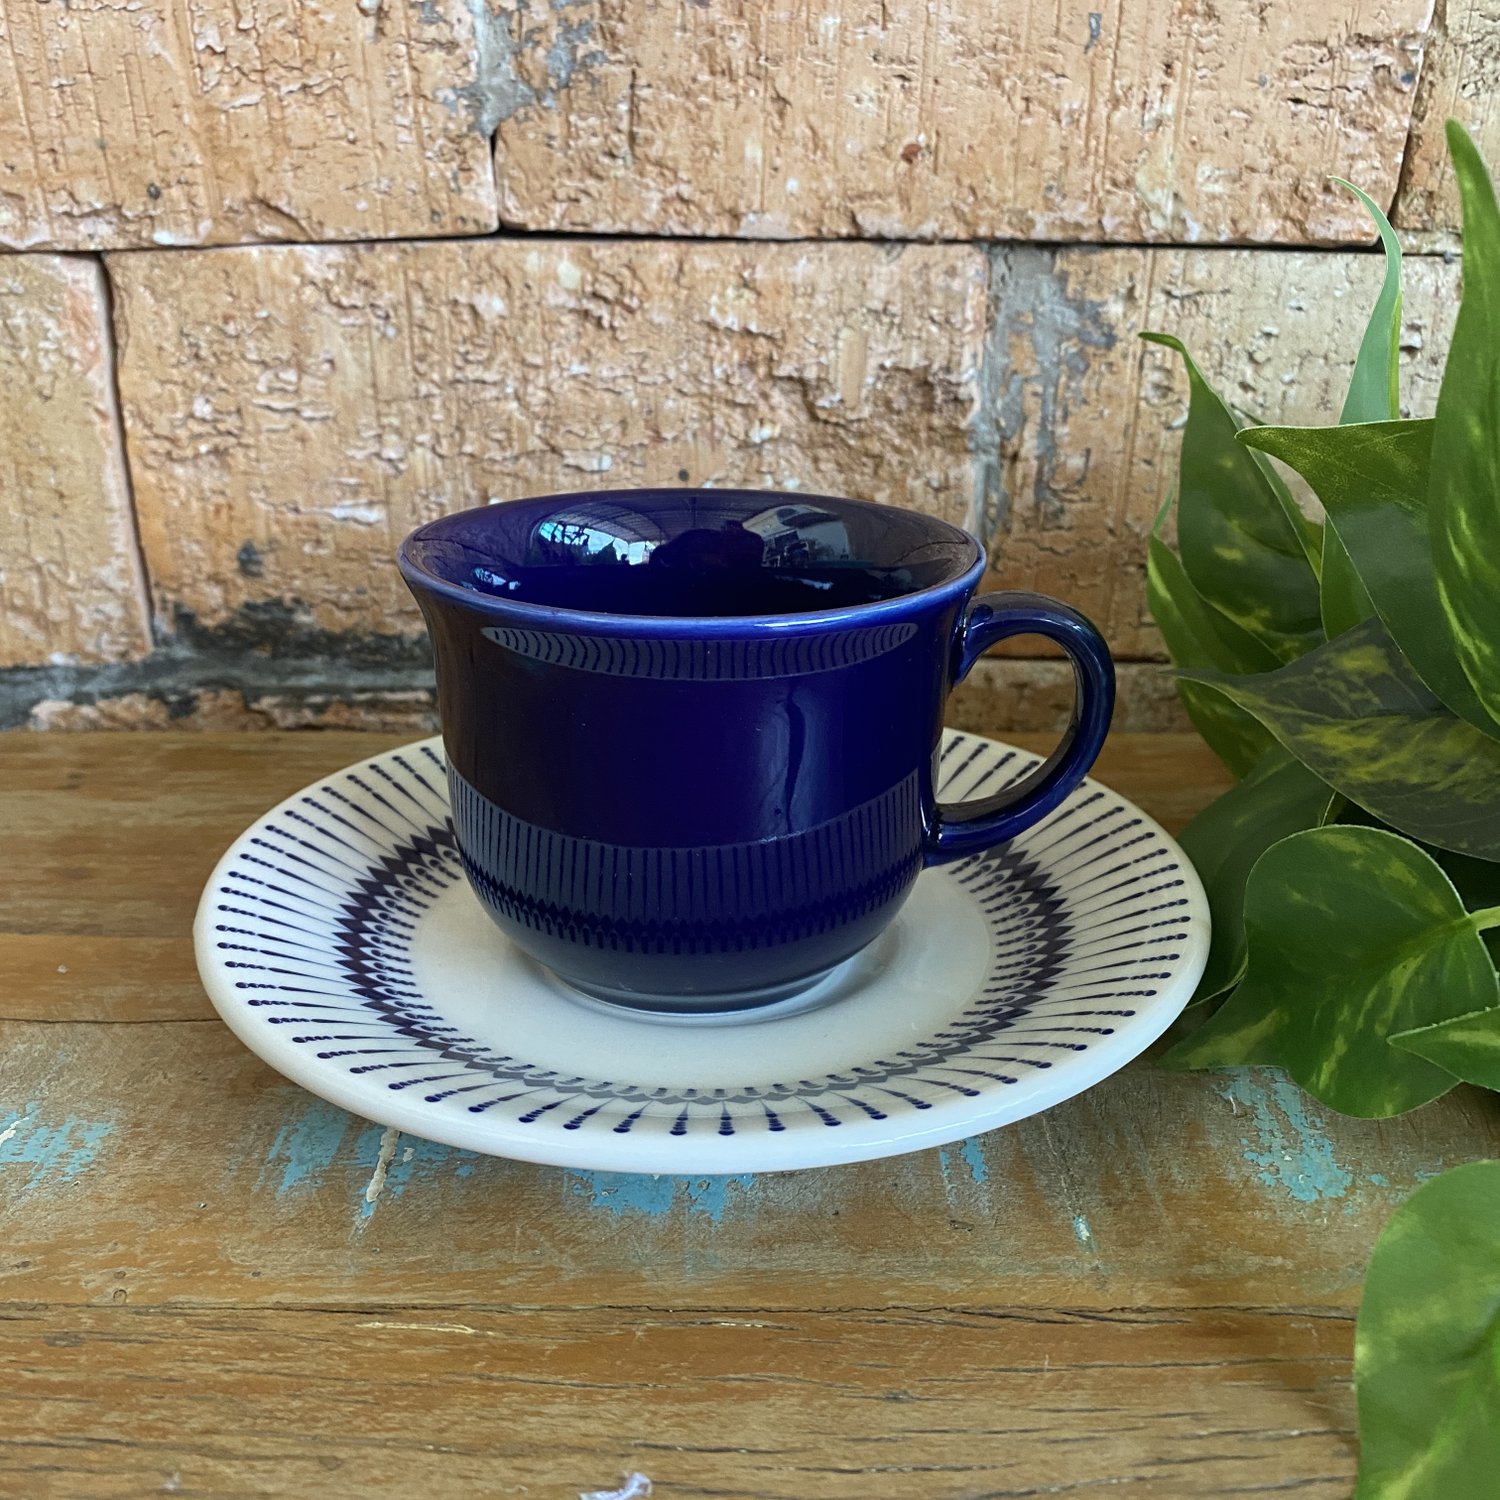 Jogo de Xícaras de Chá Azul Royal Porcelana Oxford 200ml 6